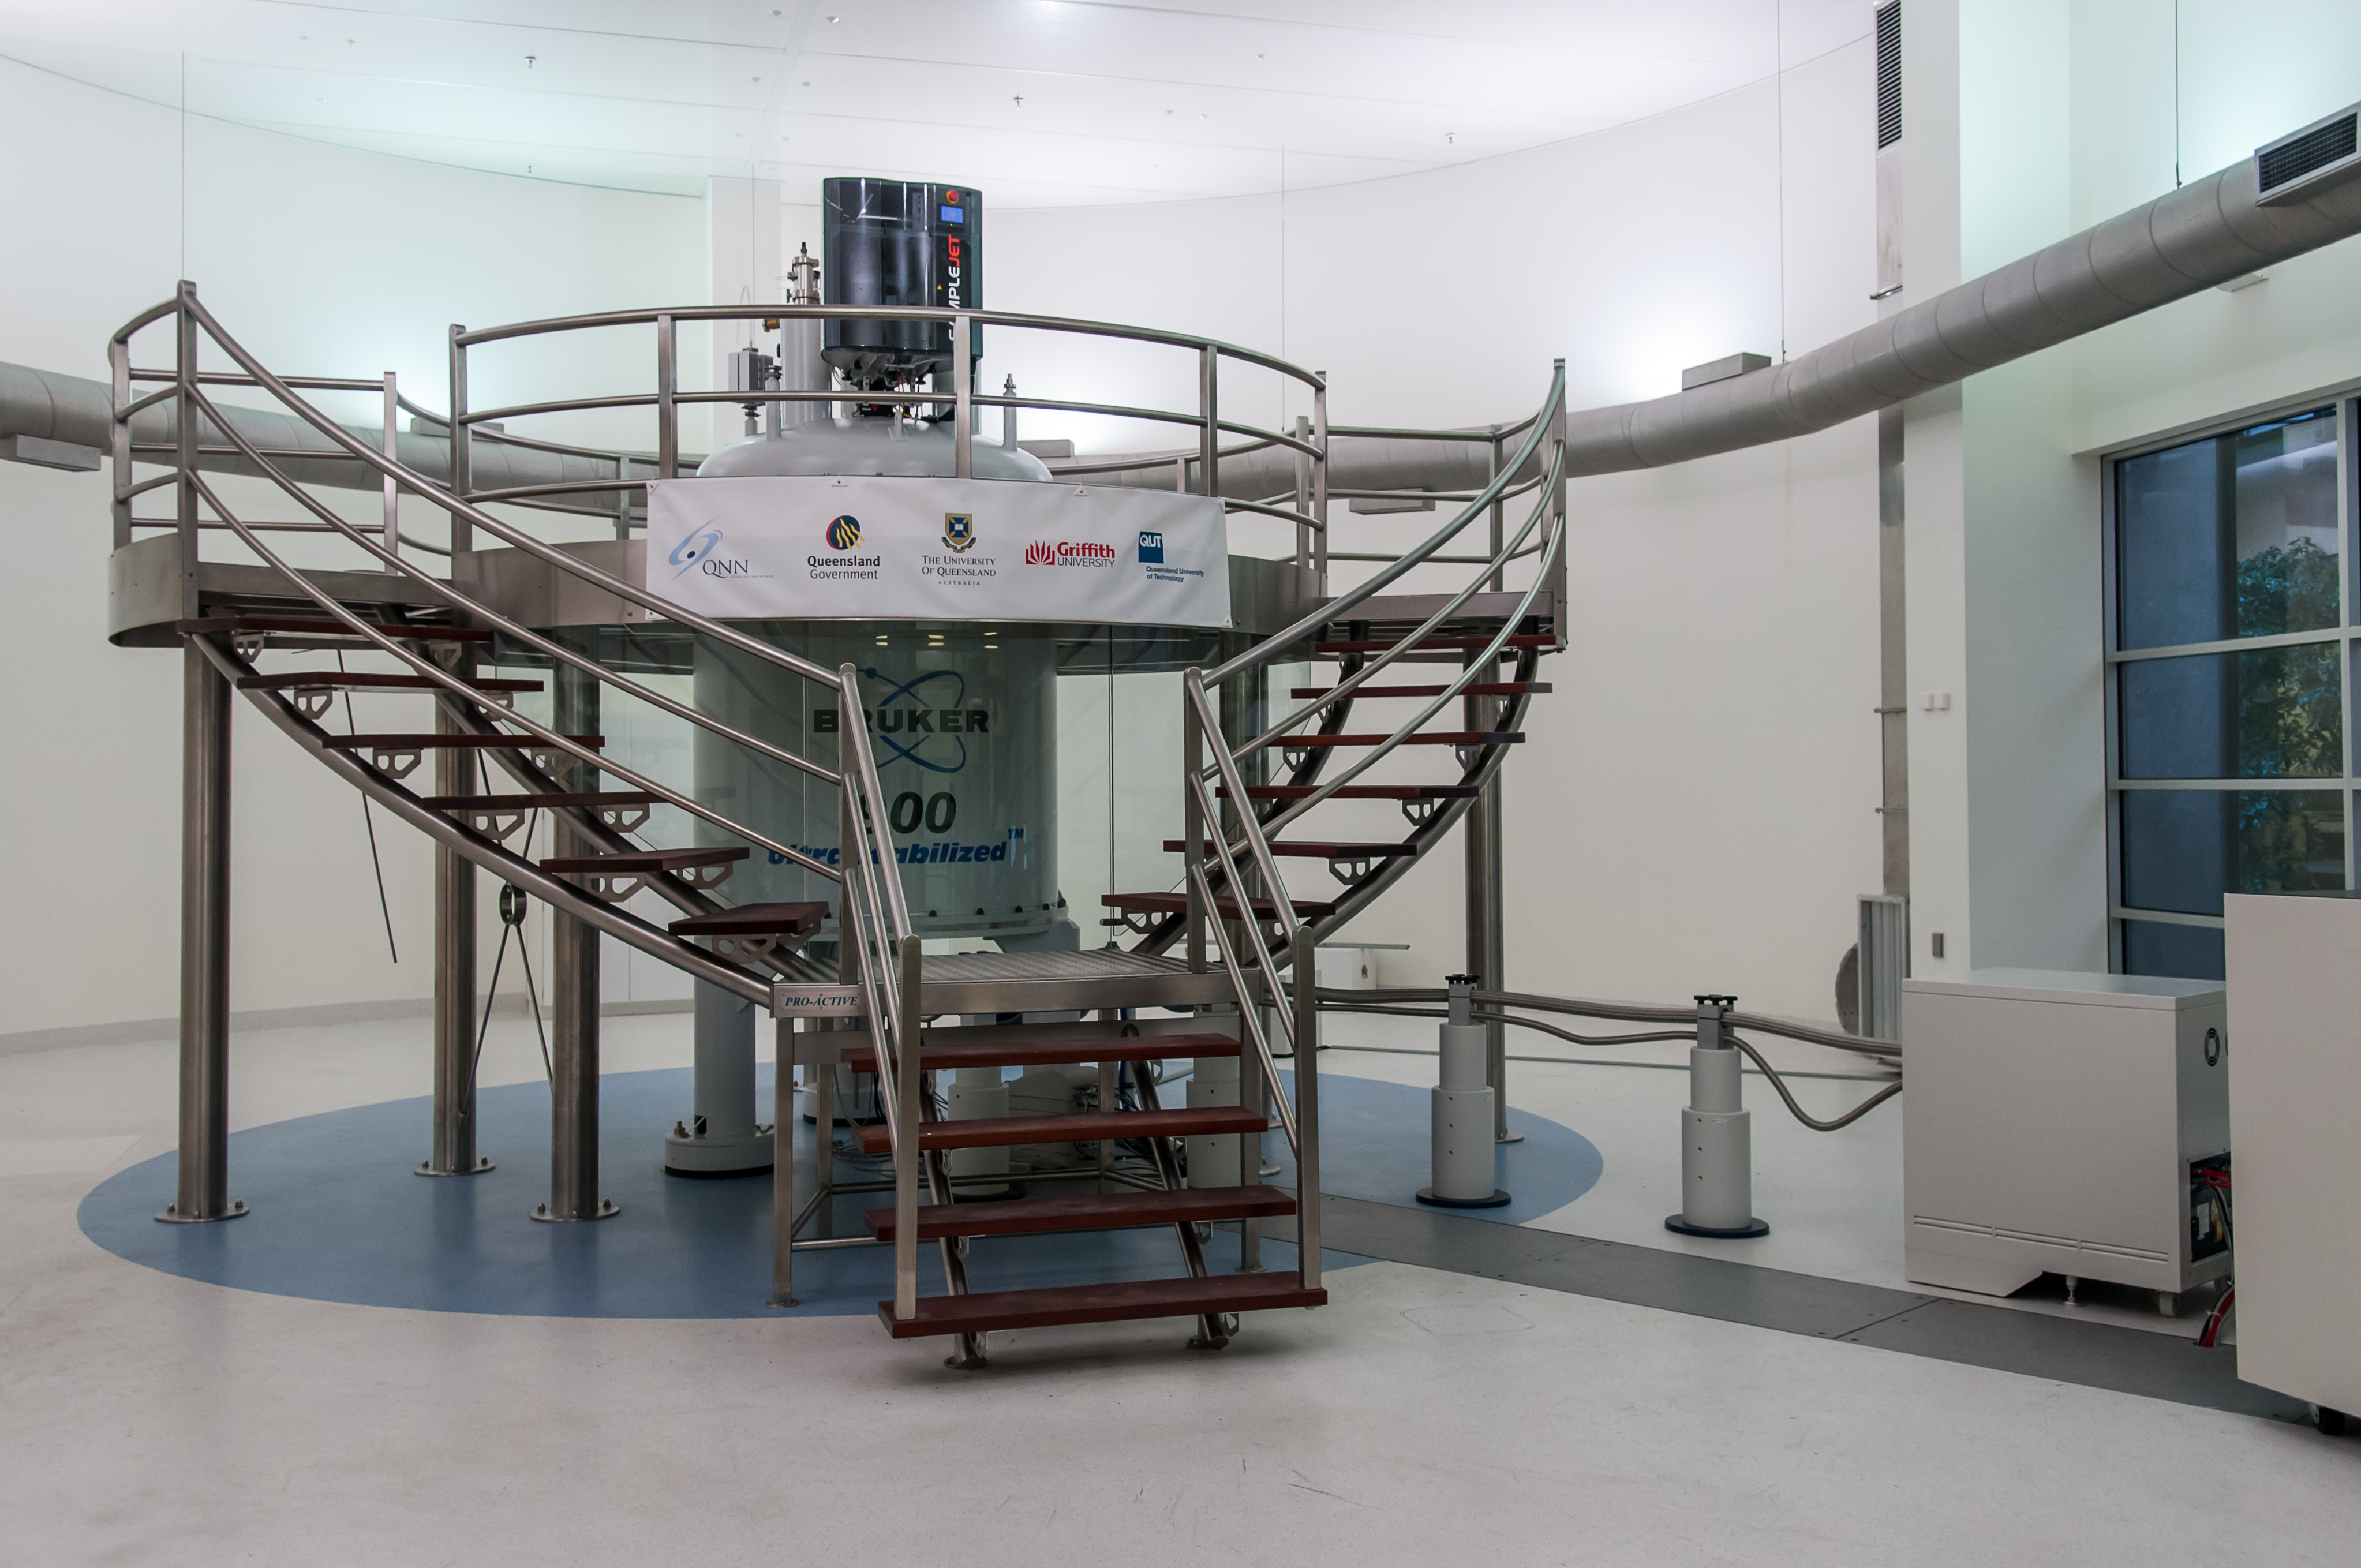 The Centre for Advanced Imaging's Avance 900 NMR spectrometer